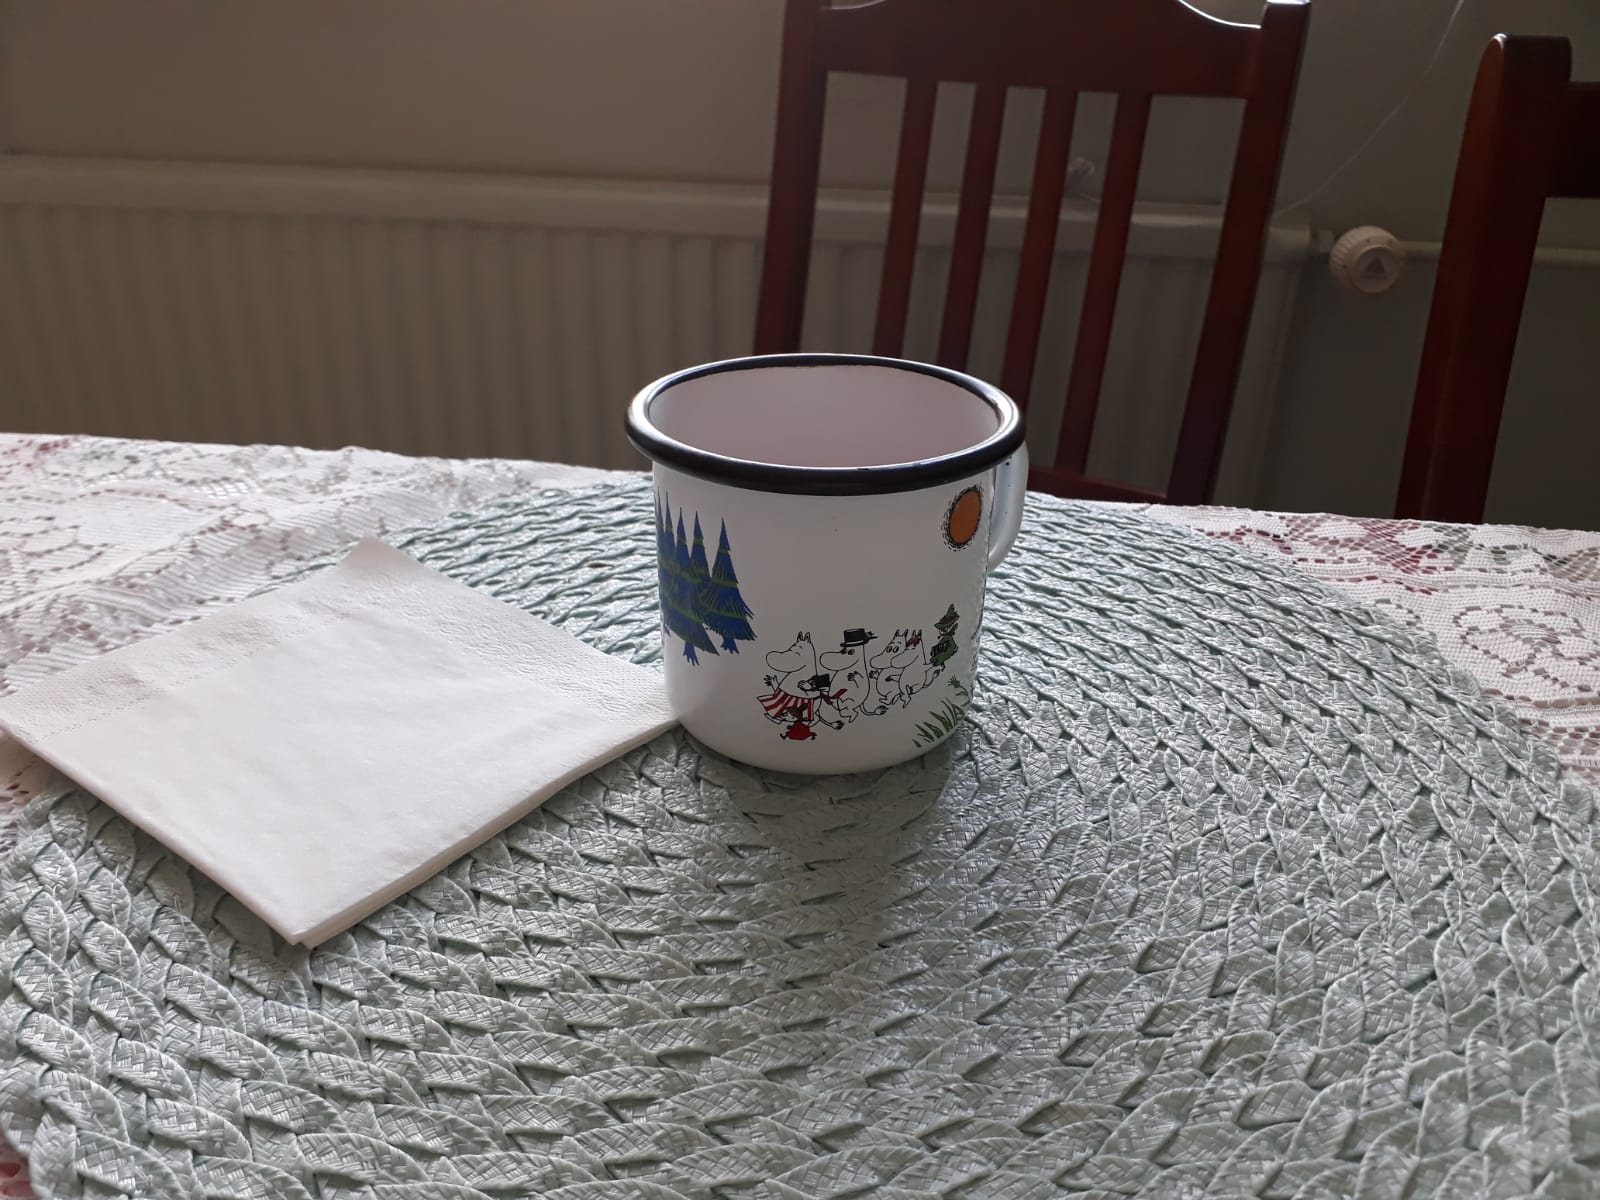 kahvikuppi ja servetti pöydällä